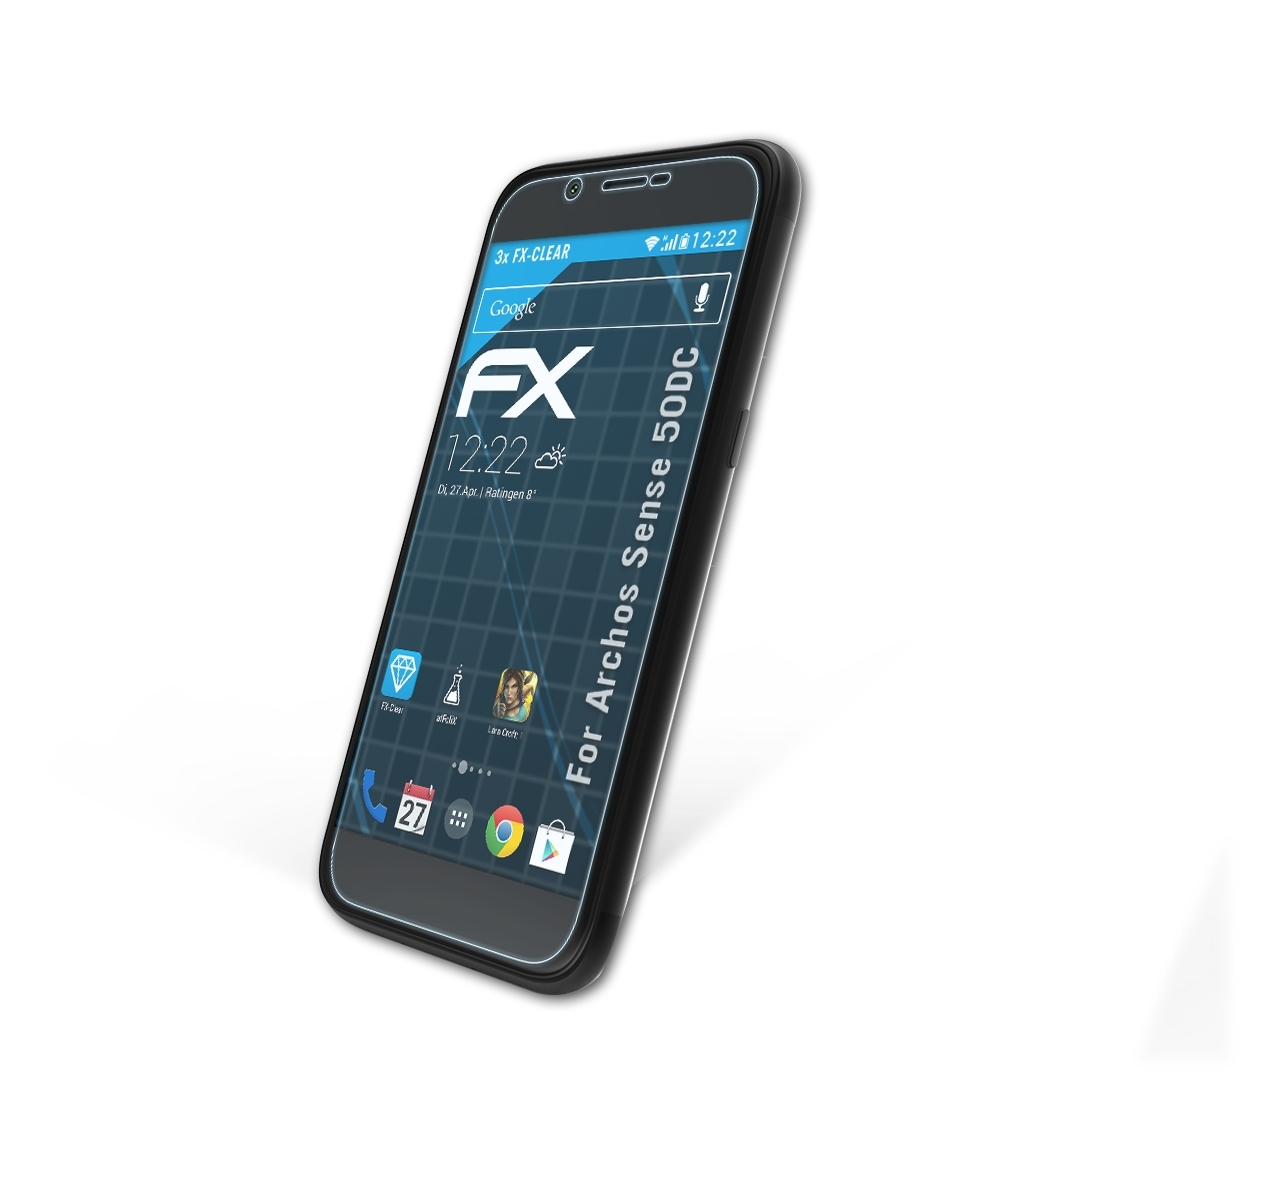 ATFOLIX 3x FX-Clear Displayschutz(für Archos Sense 50DC)